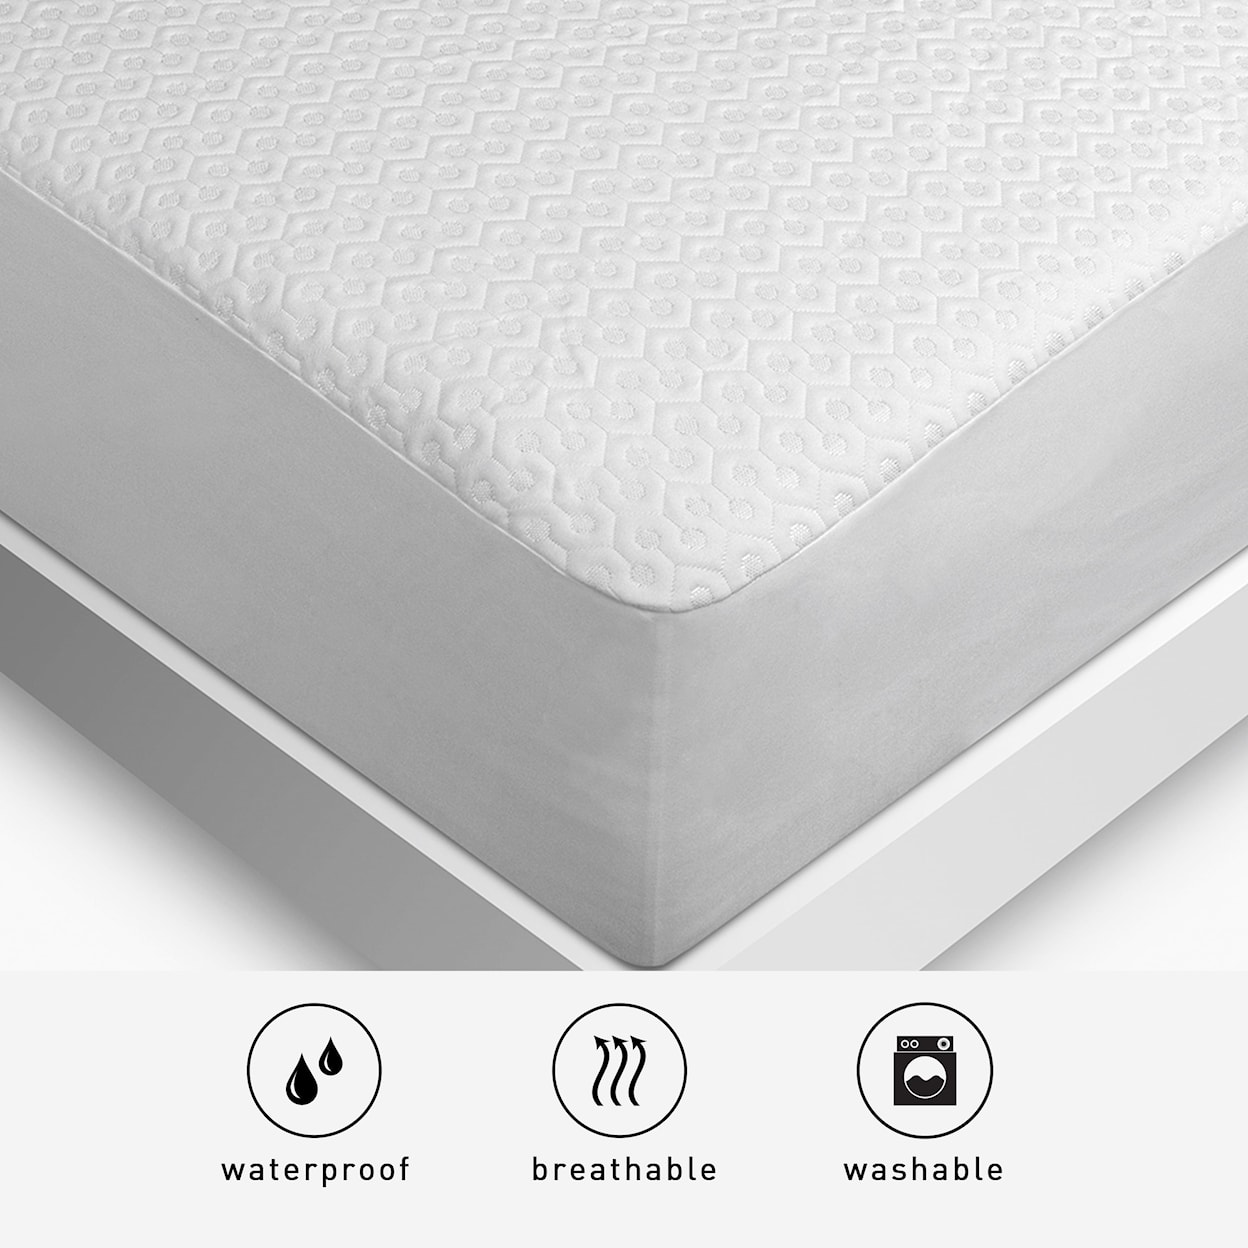 Bedgear Dri-Tec Sofa Protector Sofa Bed Mattress Protector - Full